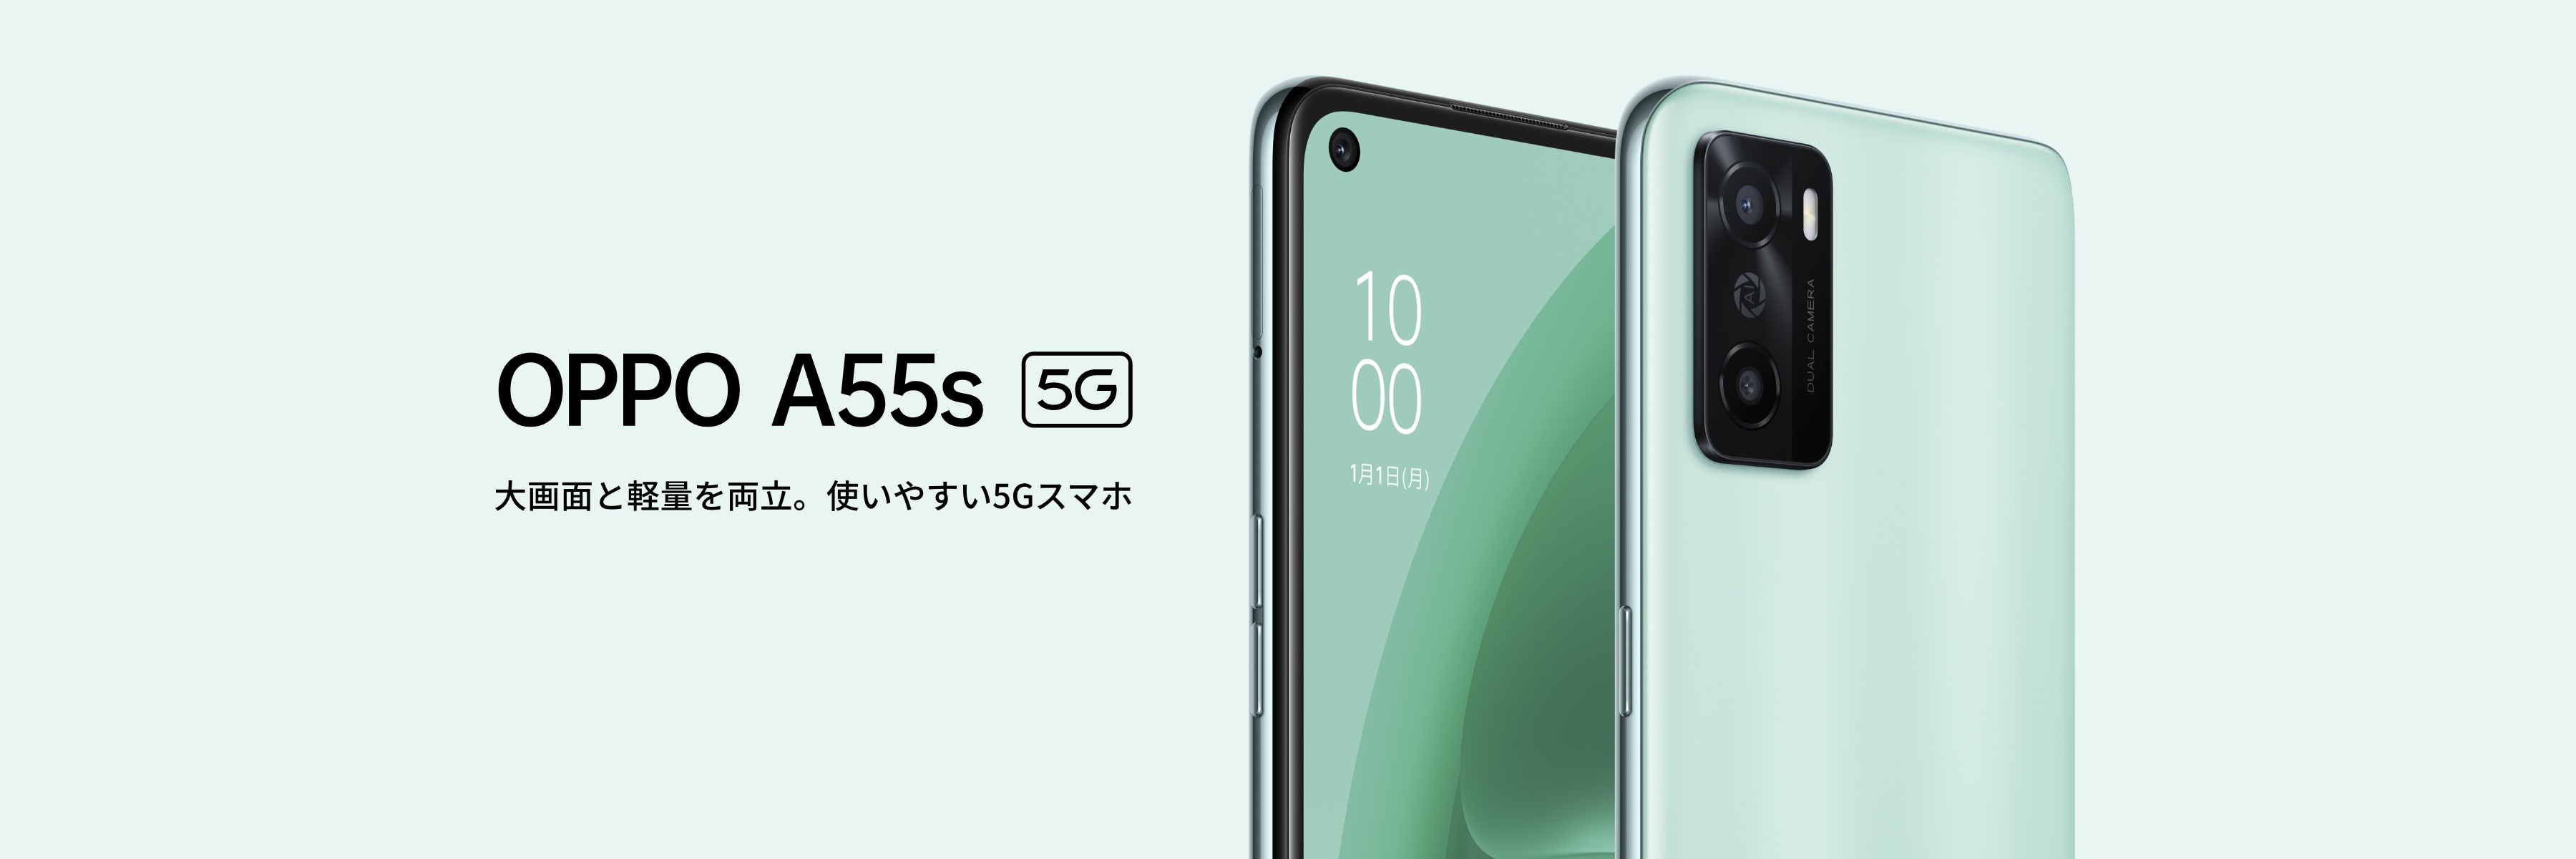 OPPO A55s 5G【SIMFREE】 | スマートフォン | OPPO公式オンラインショップ